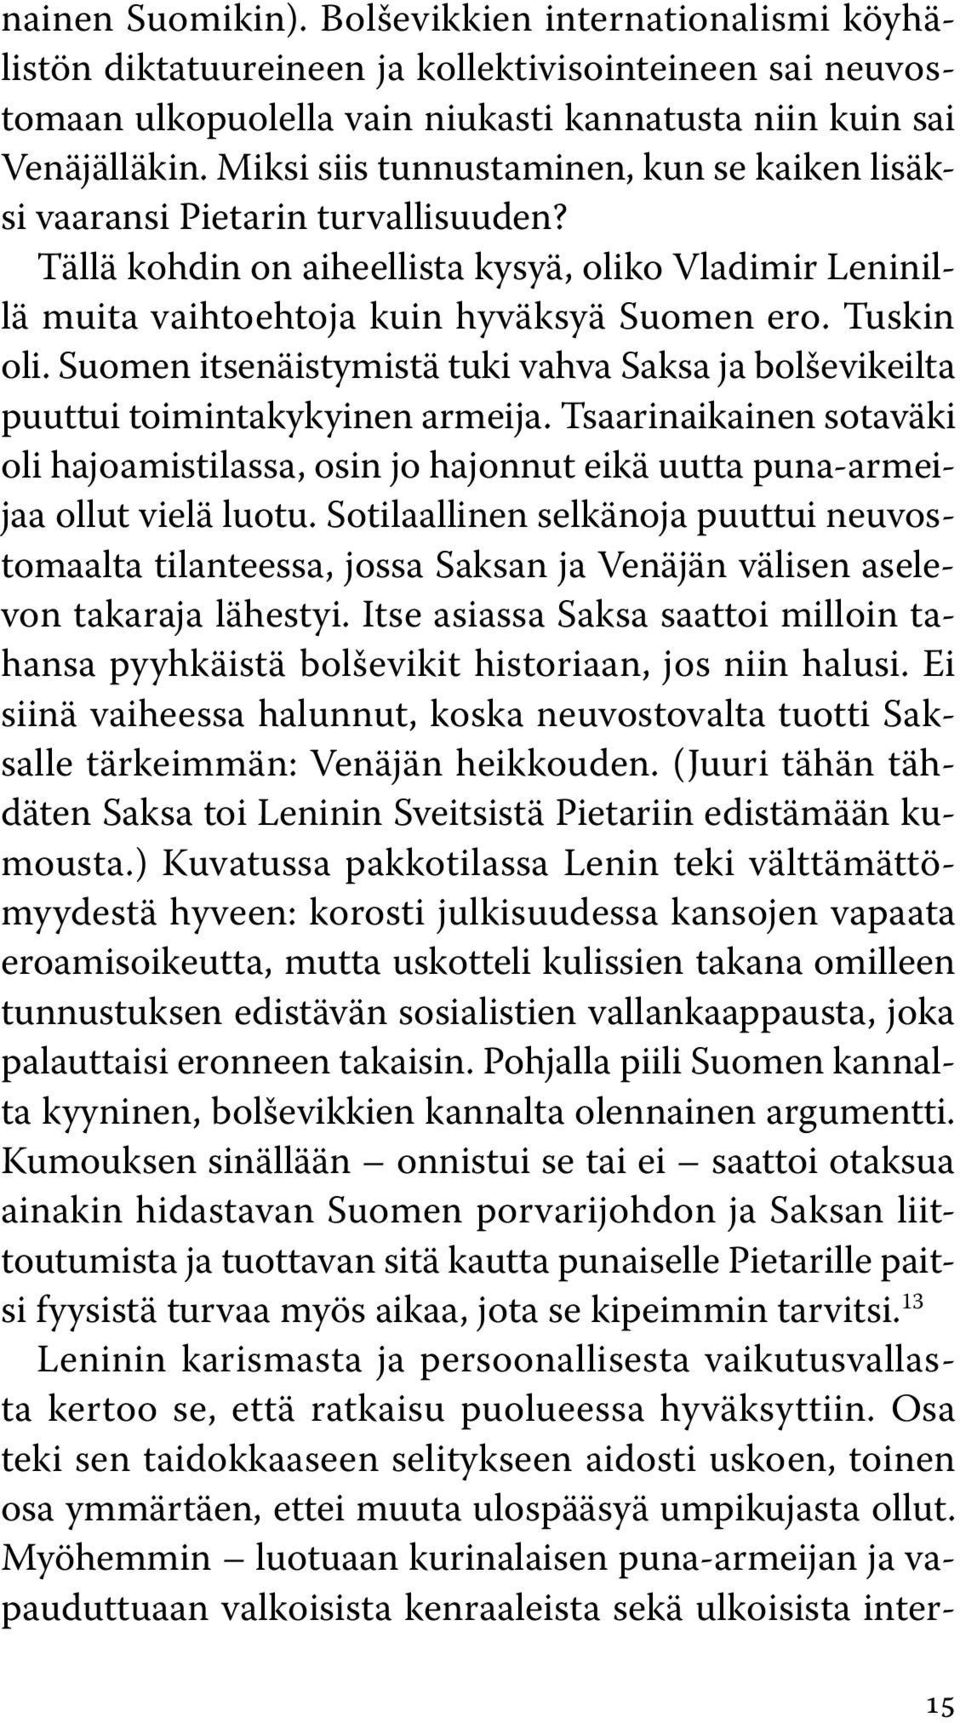 Suomen itsenäistymistä tuki vahva Saksa ja bolševikeilta puuttui toimintakykyinen armeija. Tsaarinaikainen sotaväki oli hajoamistilassa, osin jo hajonnut eikä uutta puna-armeijaa ollut vielä luotu.